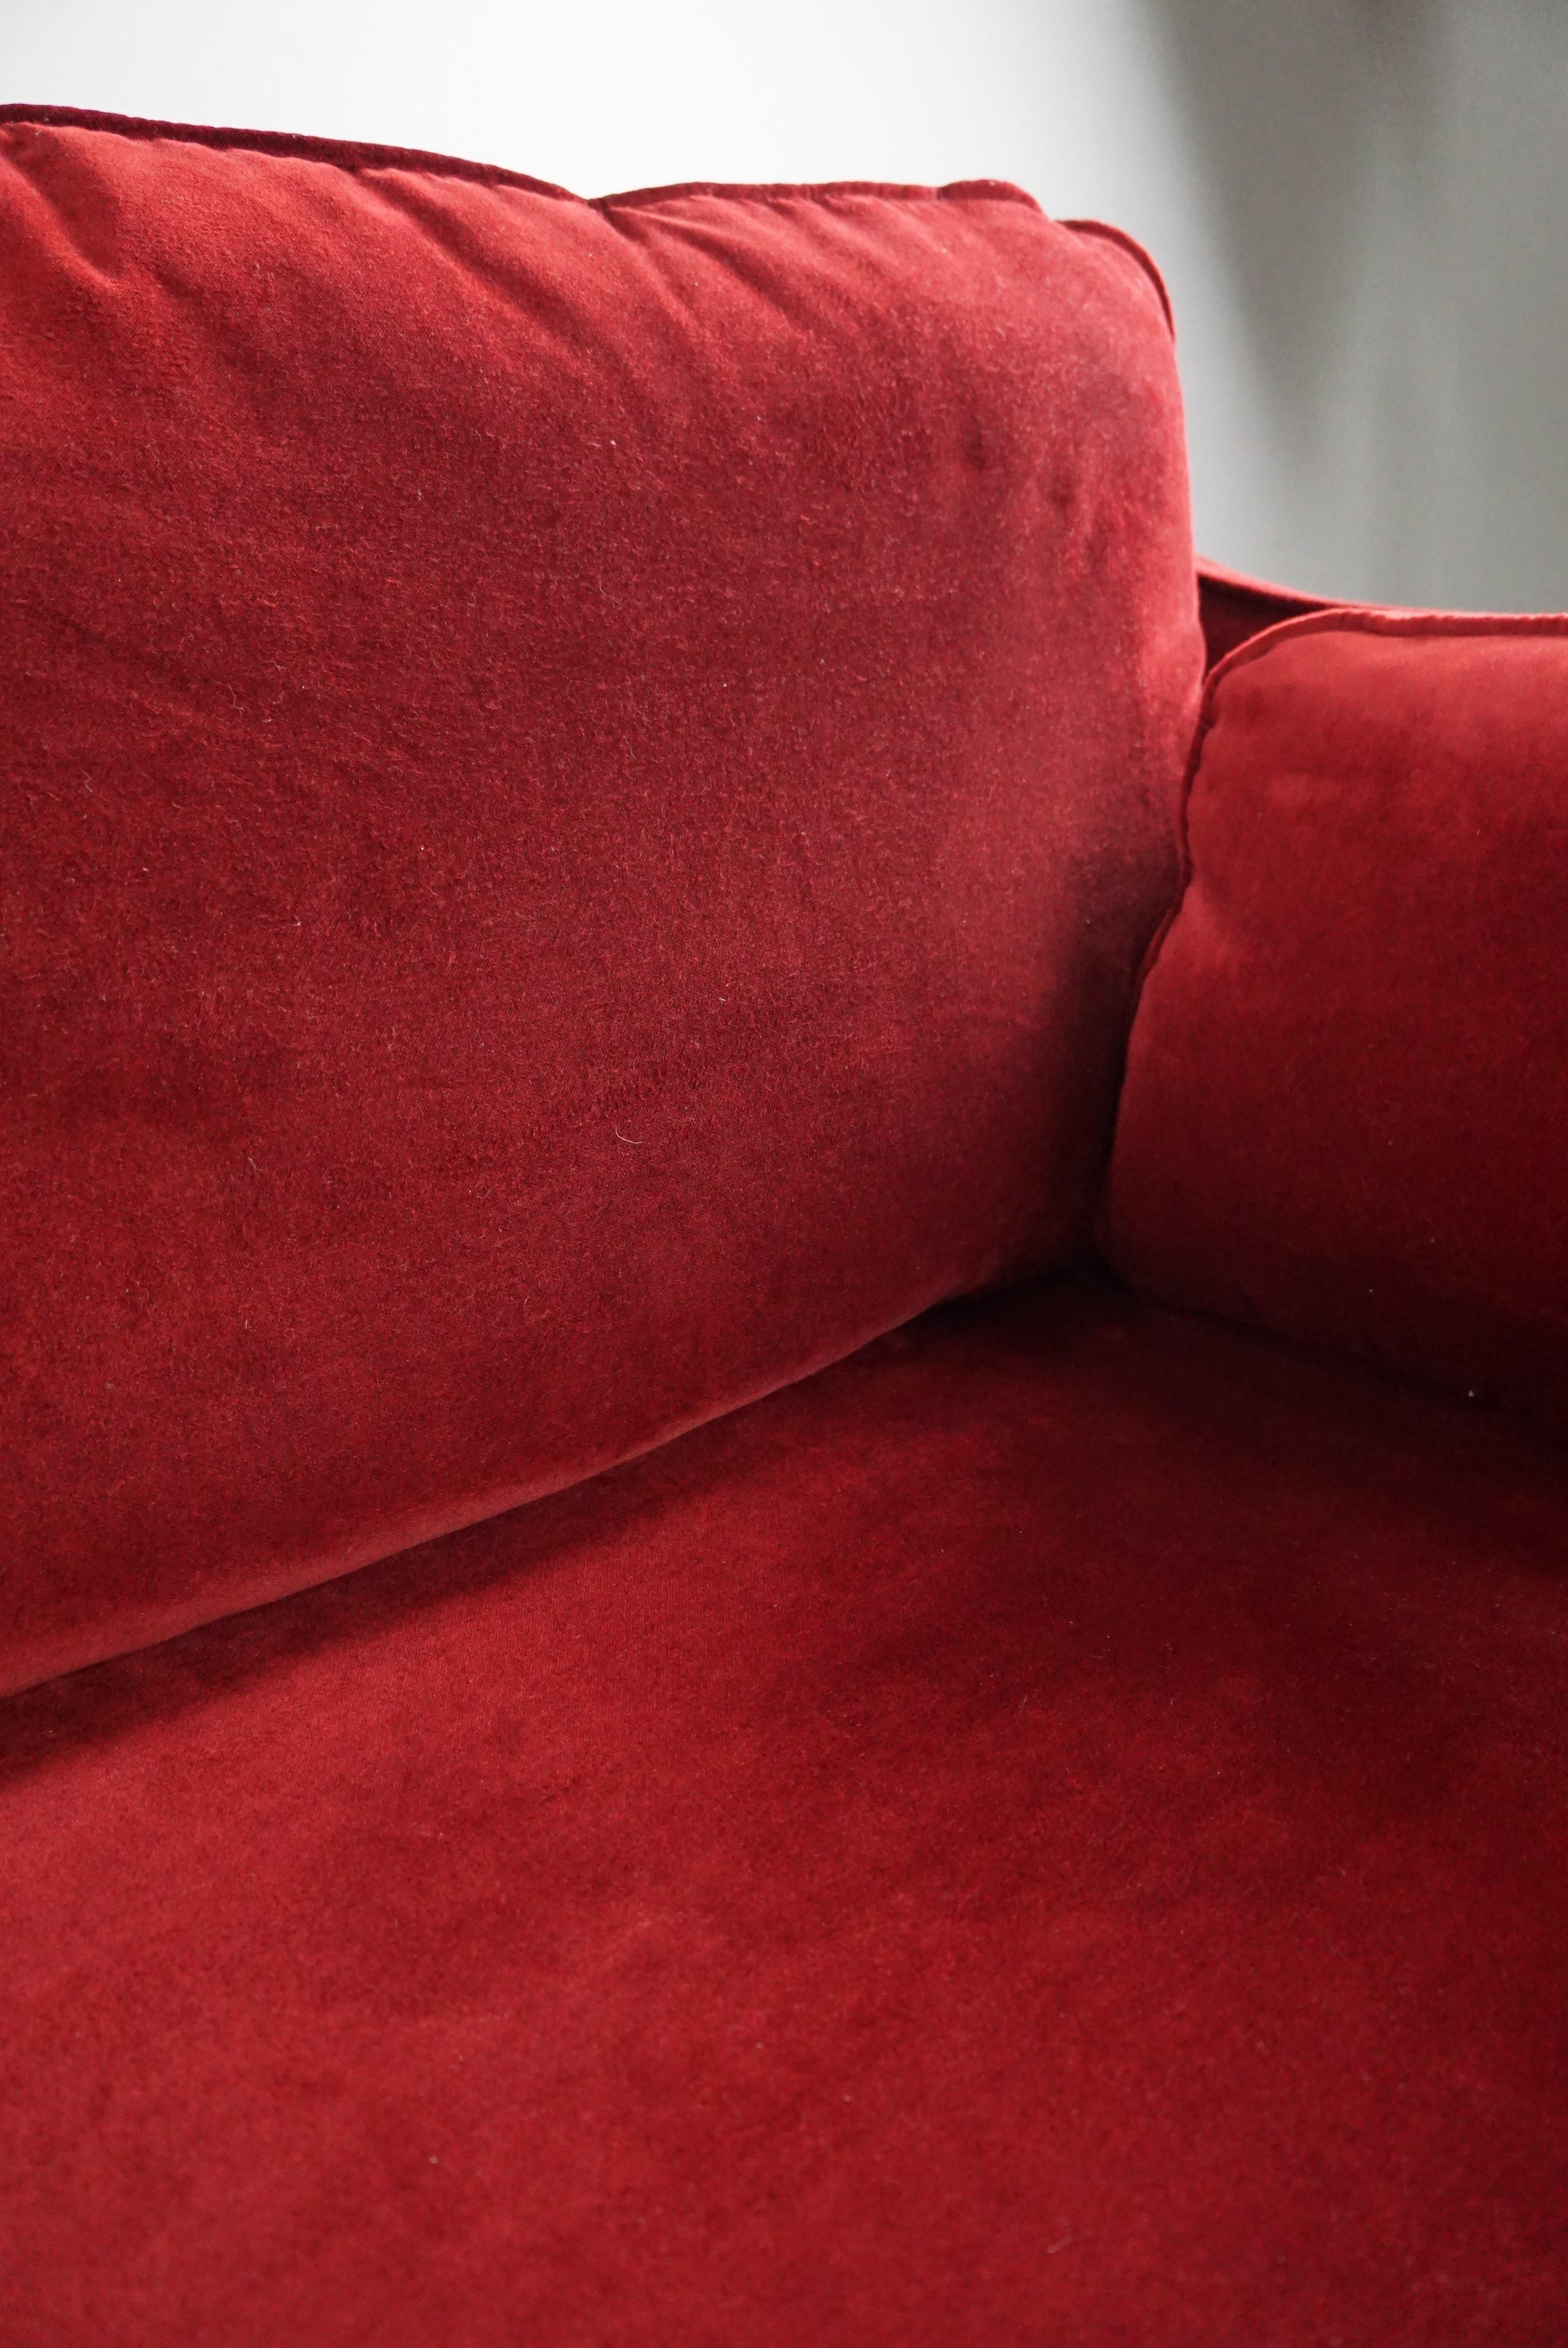 Velor 2.5 seater castle sofa with adjustable armrests For Sale 3